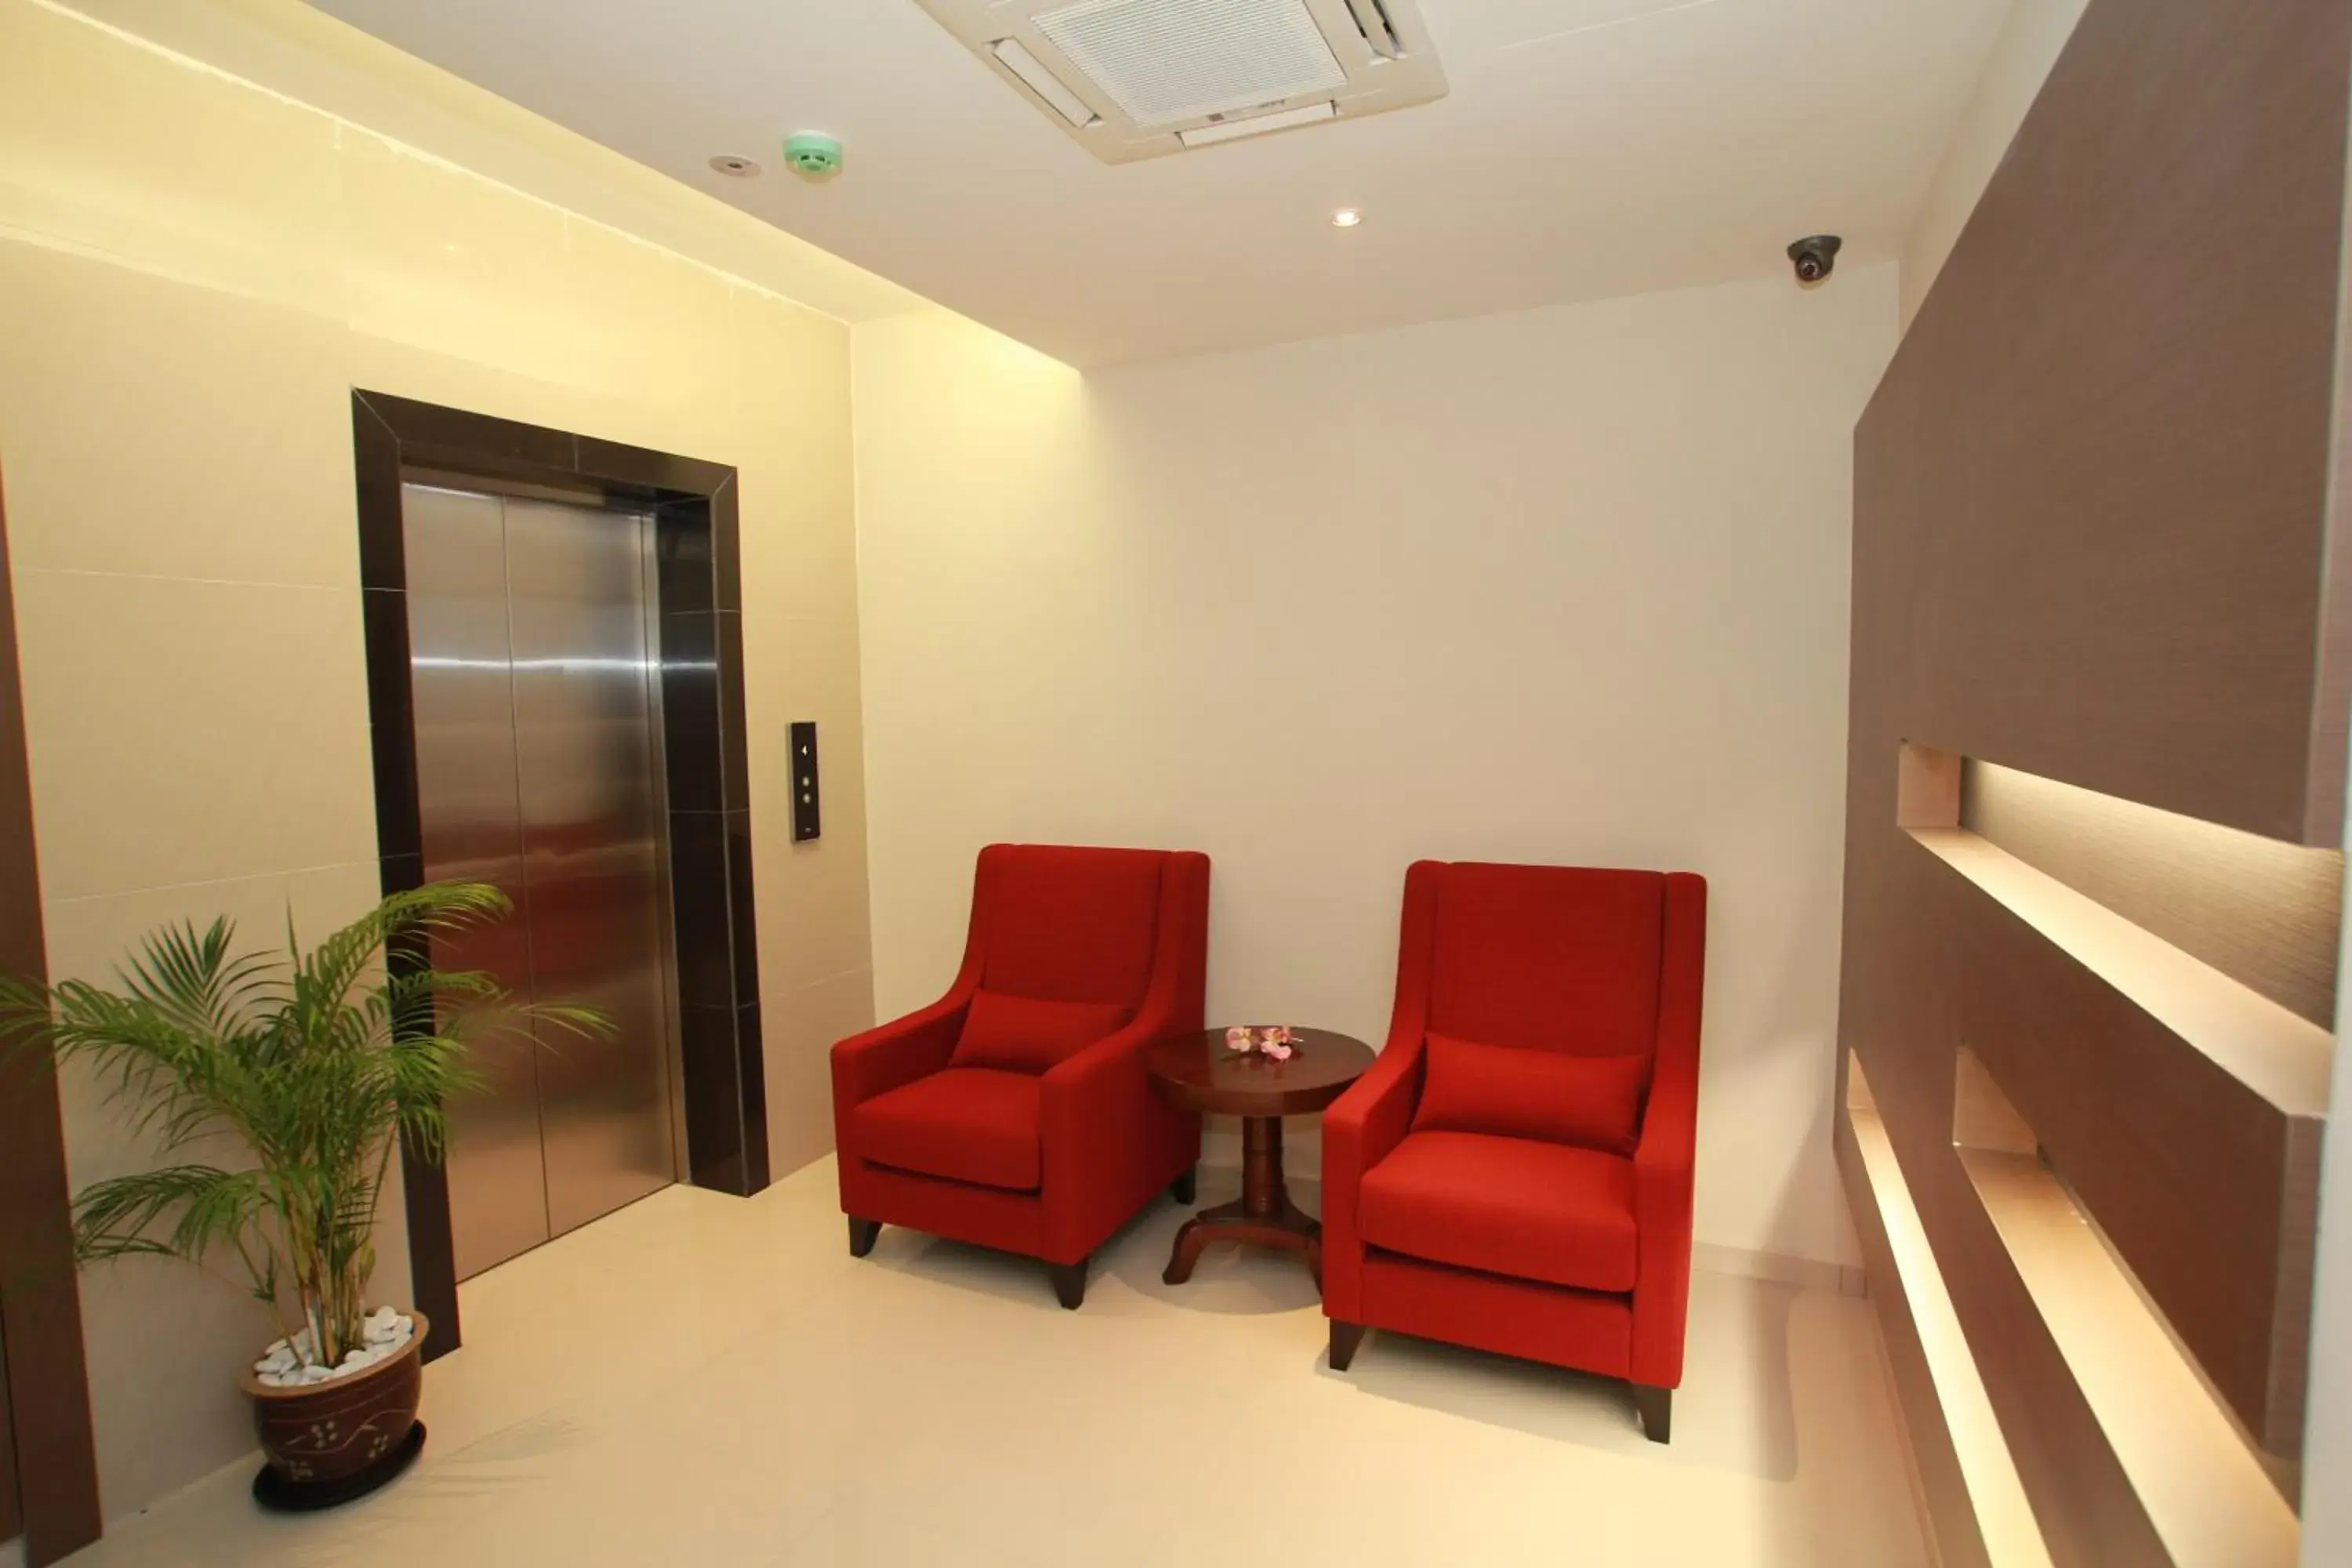 Lobby or reception, Seating Area in Tai Ichi Hotel Kuala Lumpur